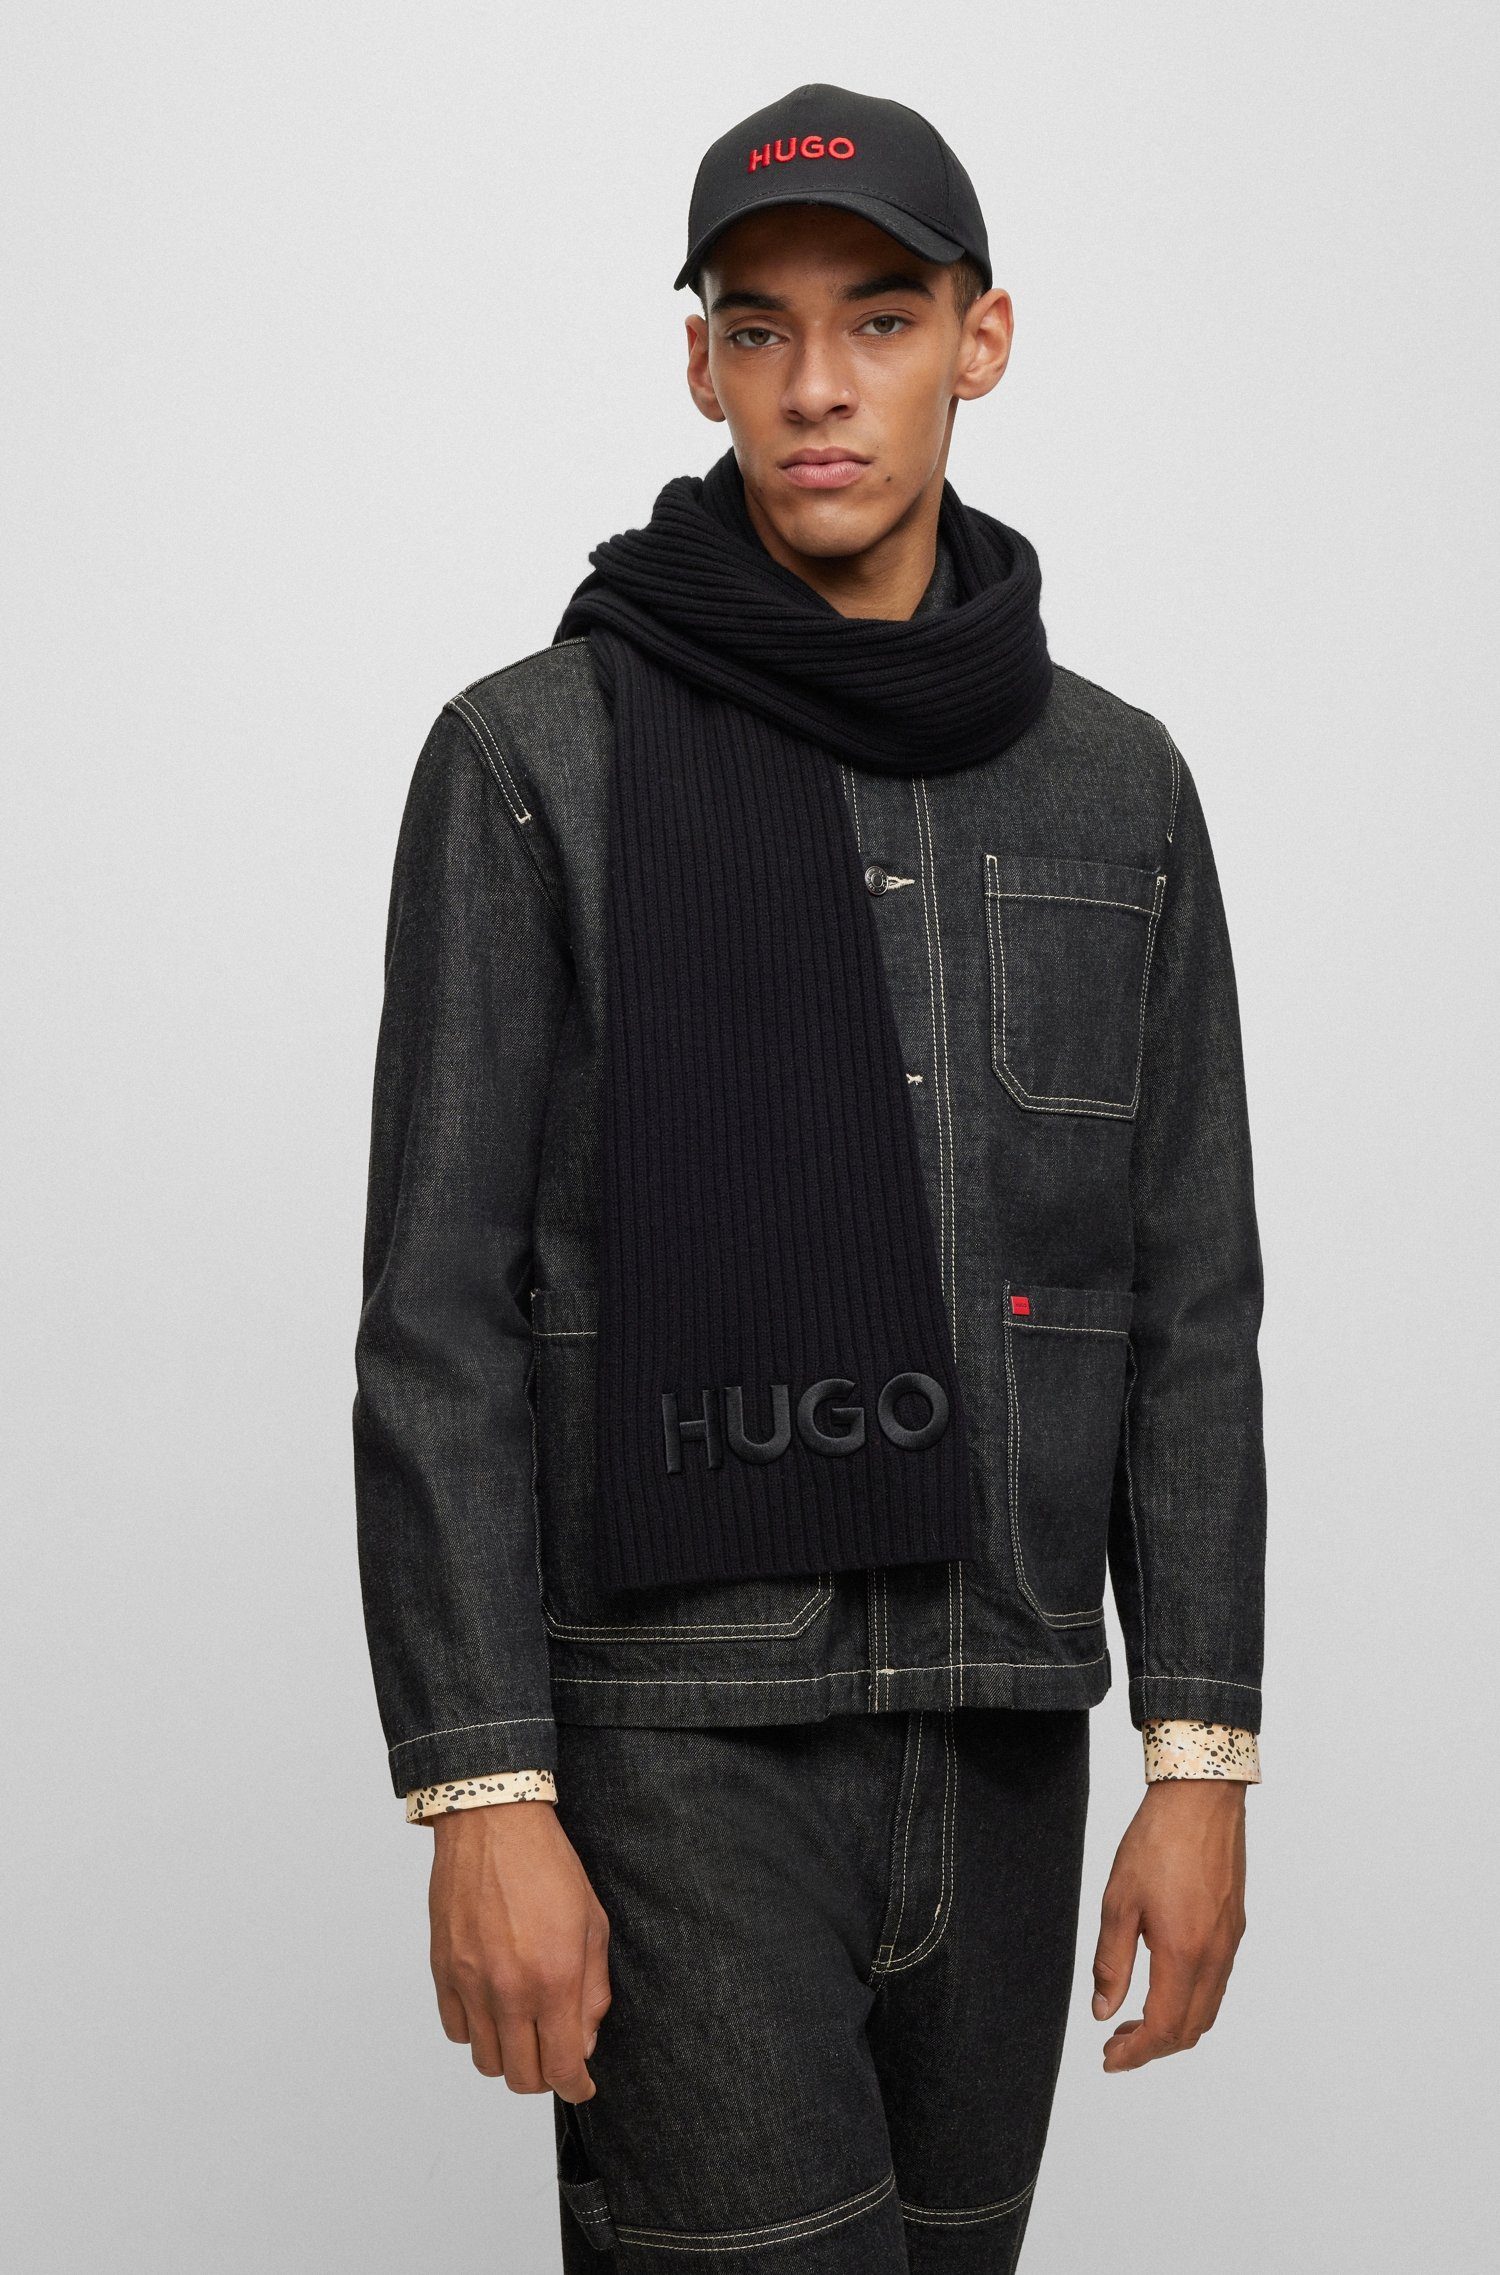 HUGO-Logoschriftzug Zunio-1, Black HUGO Schal mit